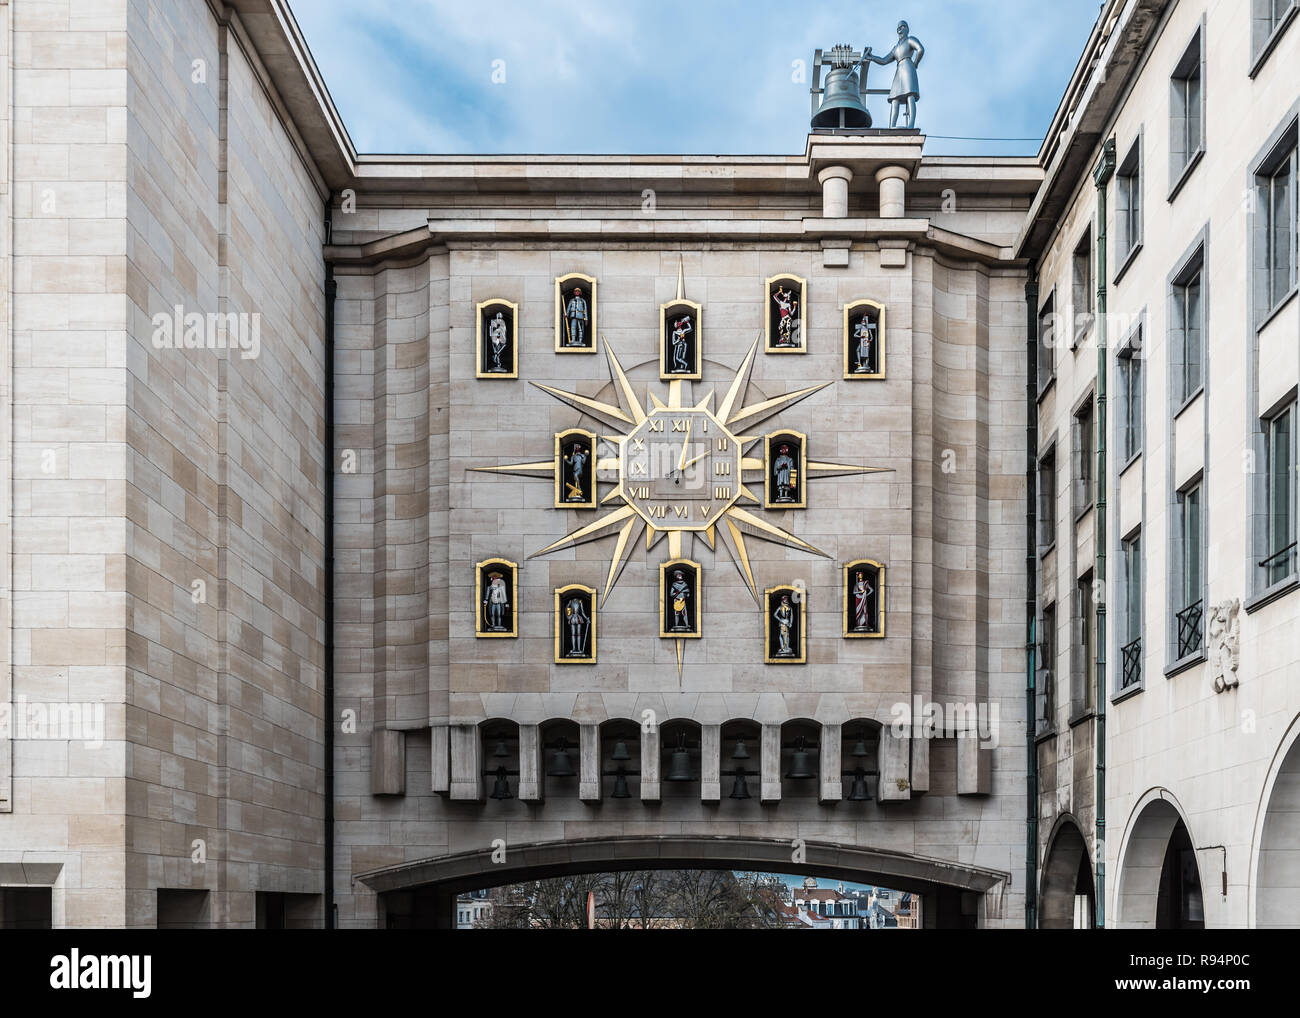 Vue sur la grande horloge d'or et de sculptures au Mont des Arts, Bruxelles, Belgique Banque D'Images